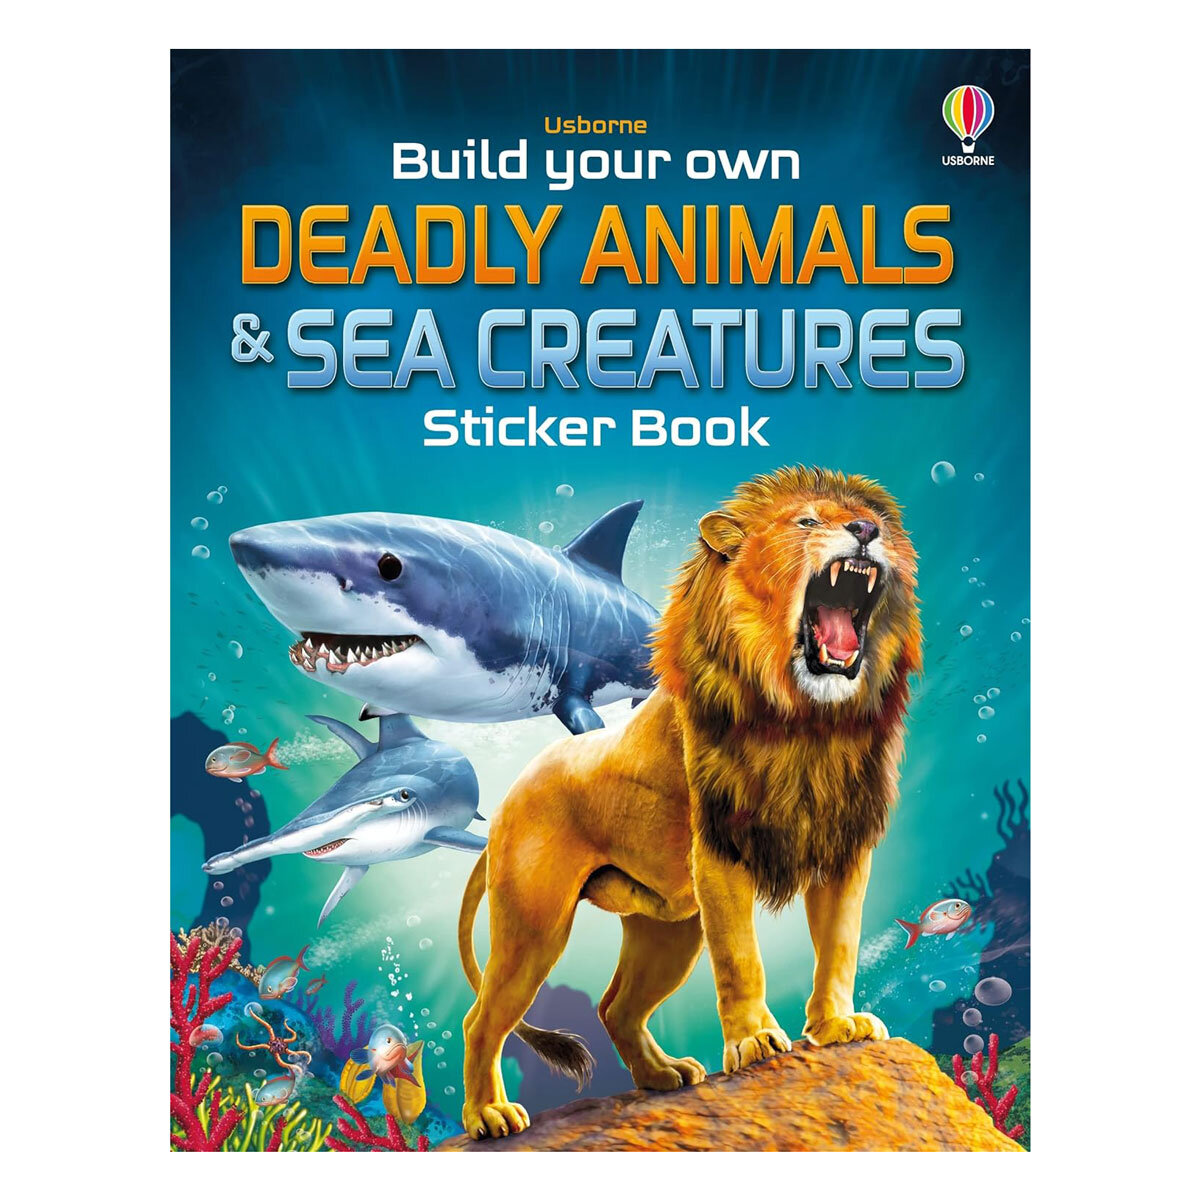 Deadly Animals & Sea Creatures